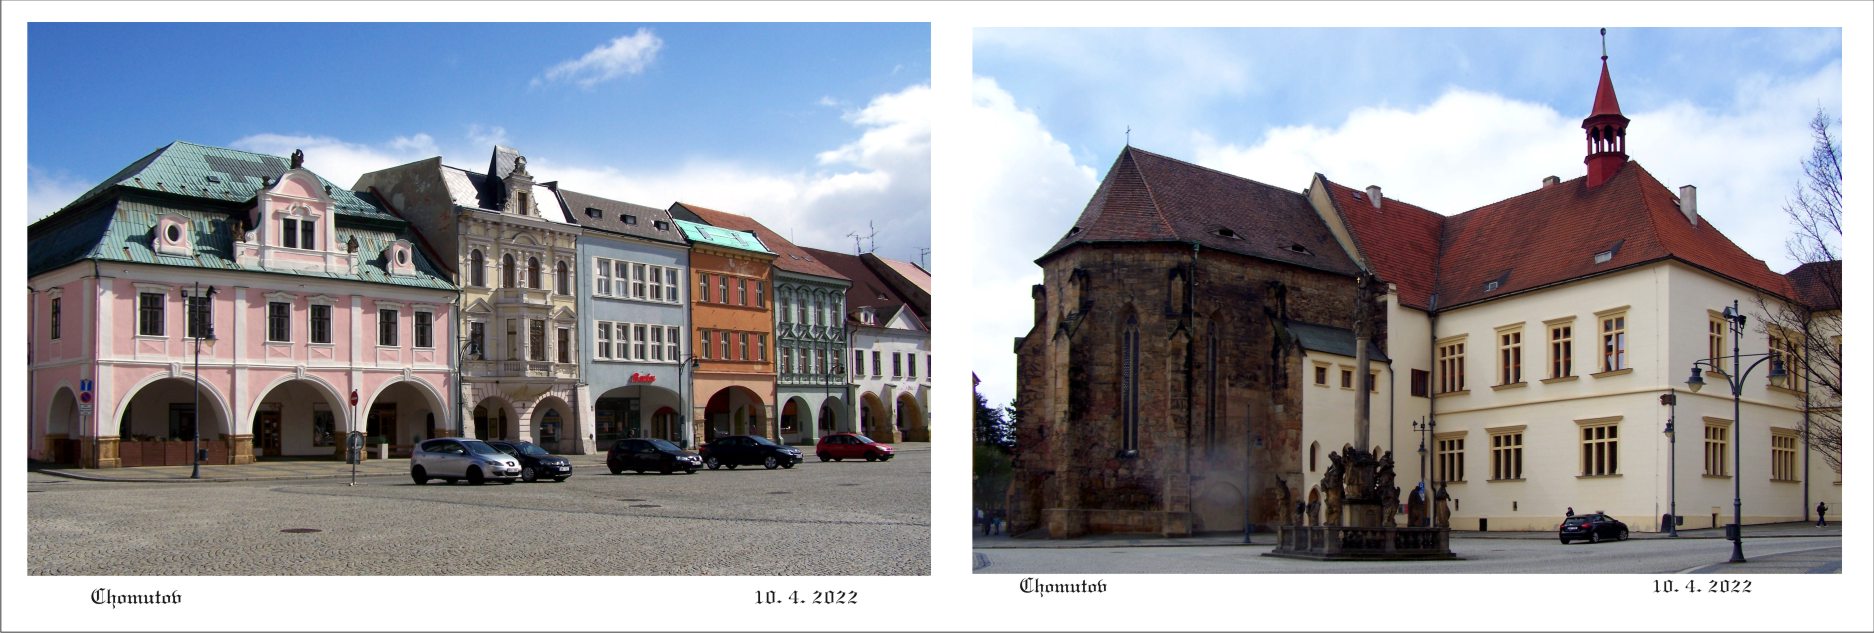 Hlavní strana měšťanských domů a původní část komendy s gotickým kostelem sv. Kateřiny.